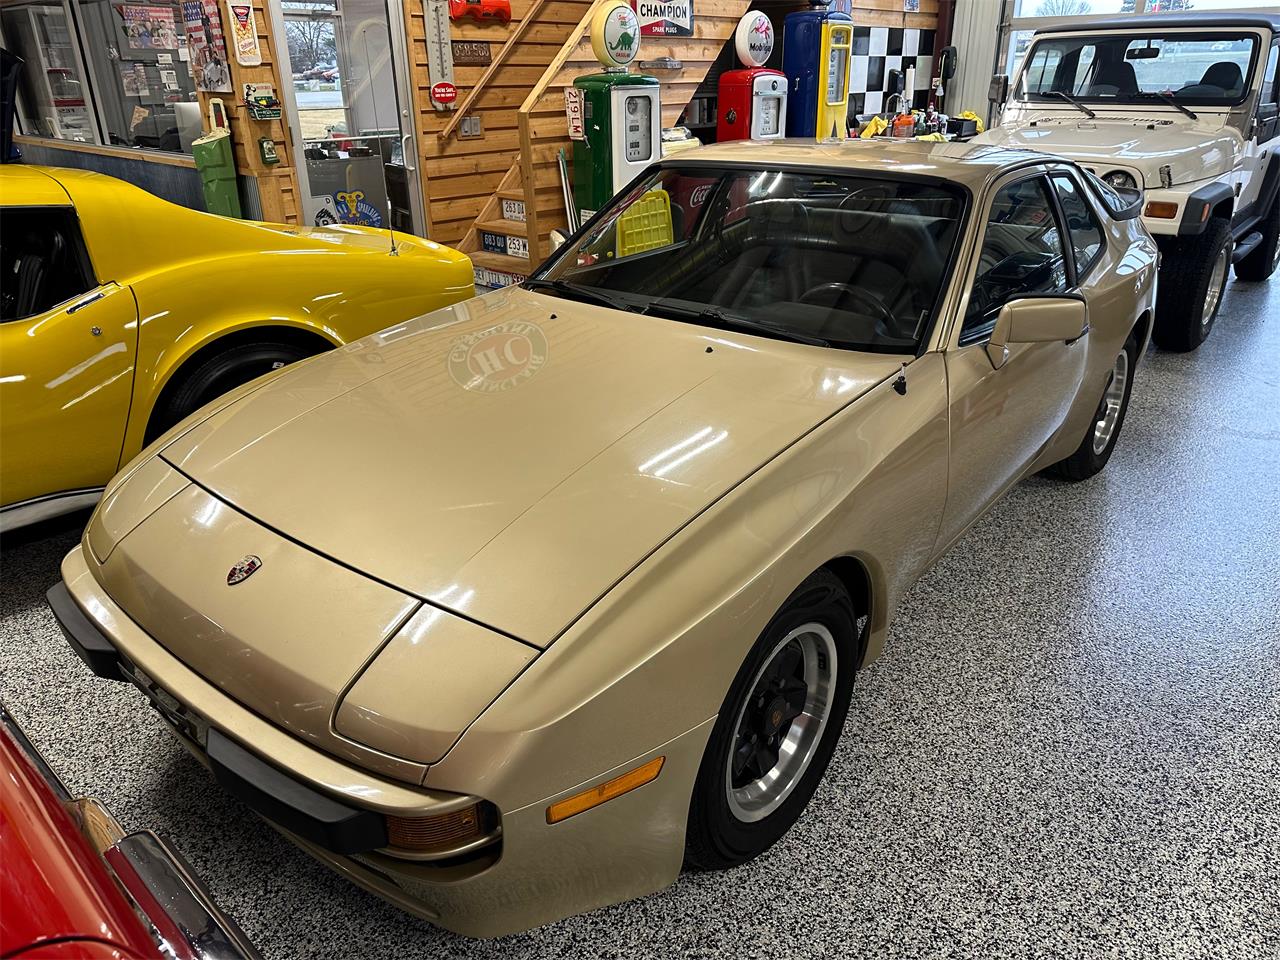 For Sale: 1983 Porsche 944 in Hamilton, Ohio for sale in Hamilton, OH